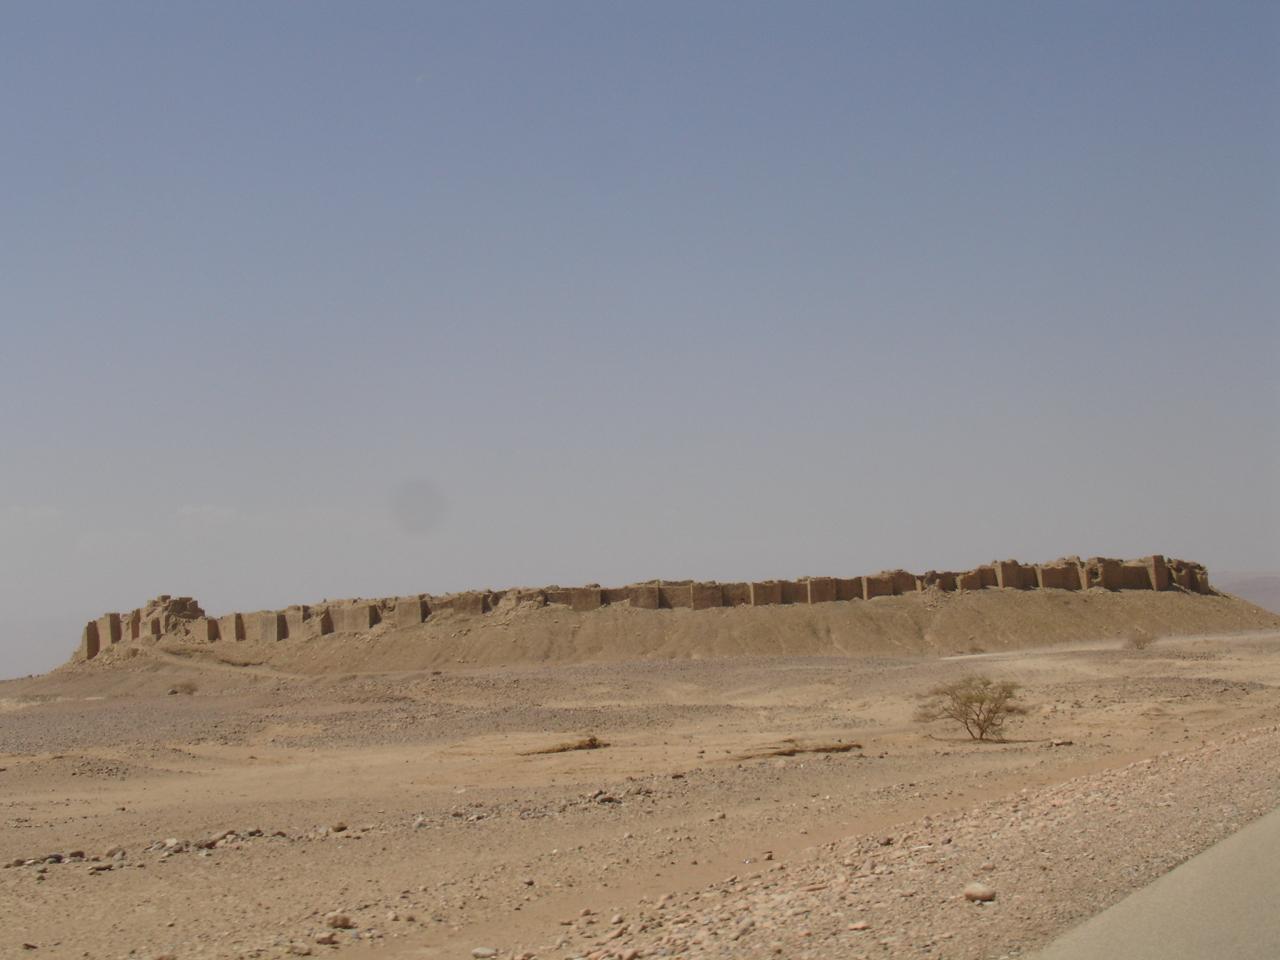 سور مدينة براقش الأثري- قبل القصف Baraqish a town in northwestern Yemen. Photo: Amida Sholan